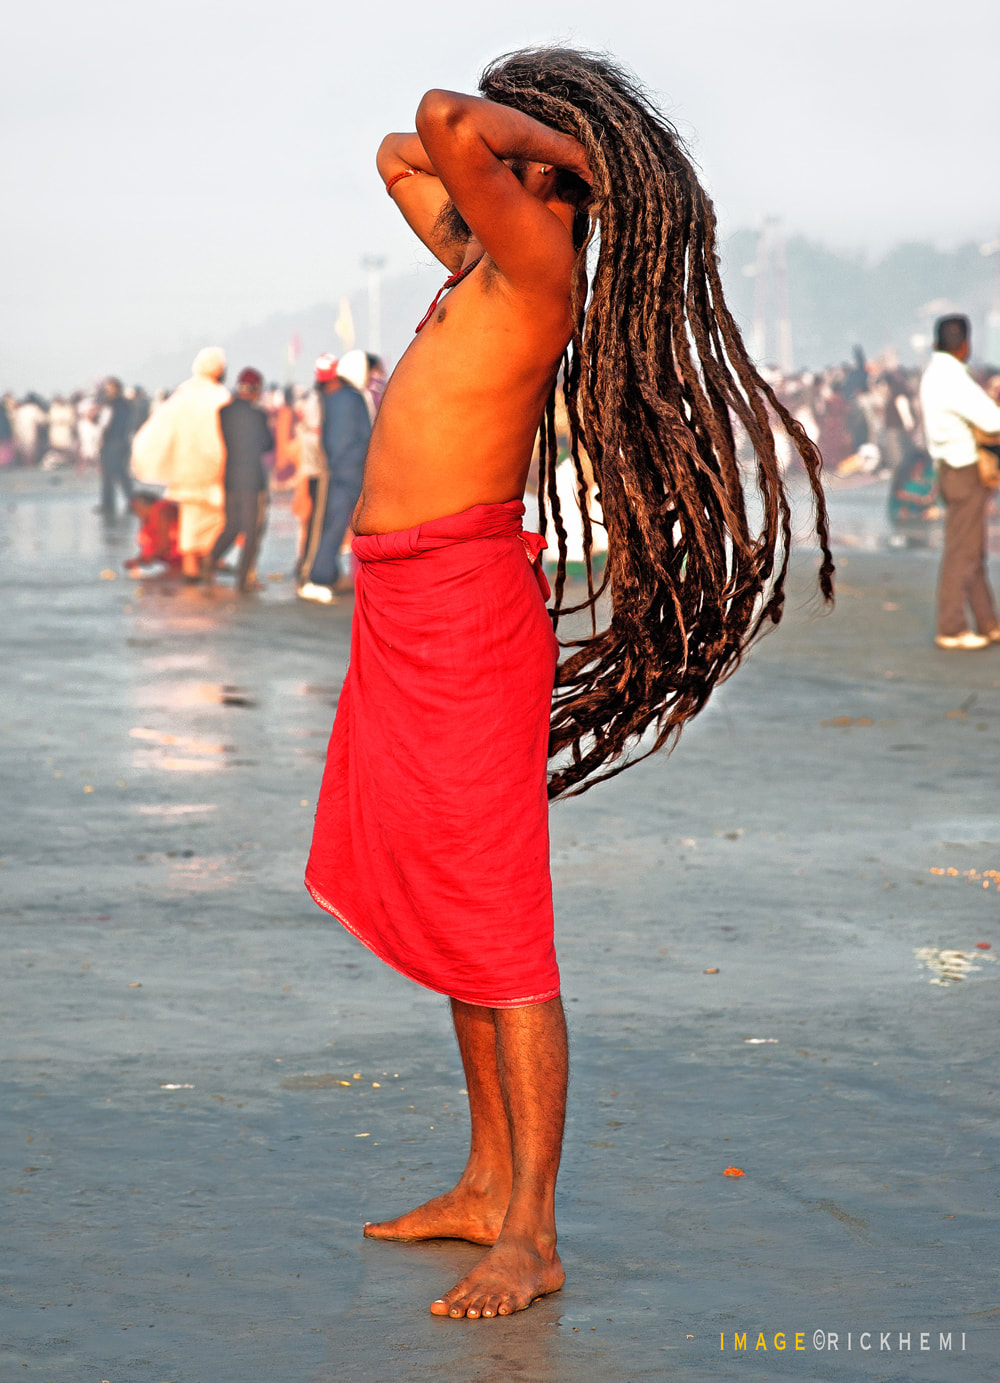 India overland travel, Mela festival India, image by Rick Hemi 